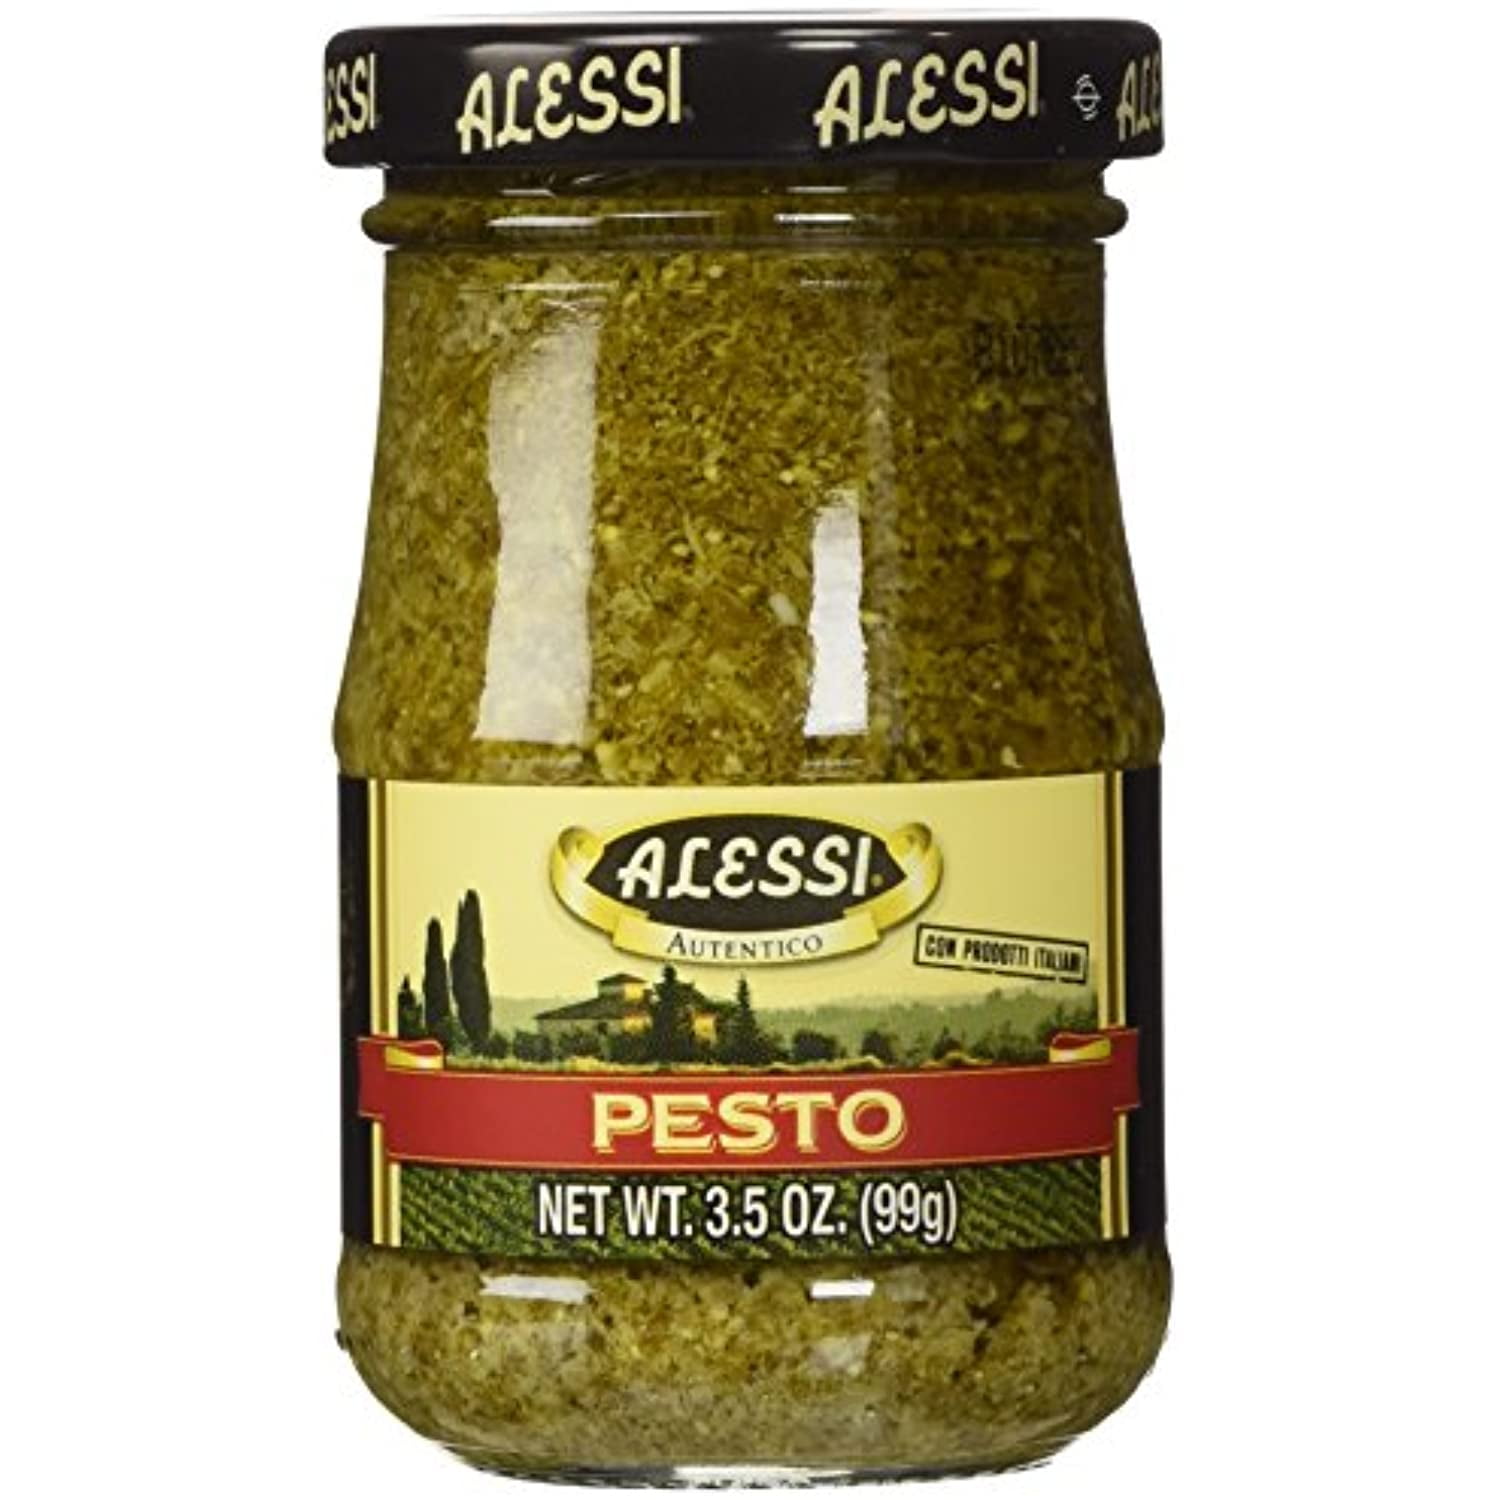 Pack of 4 Alessi Pesto 3.5 Oz 